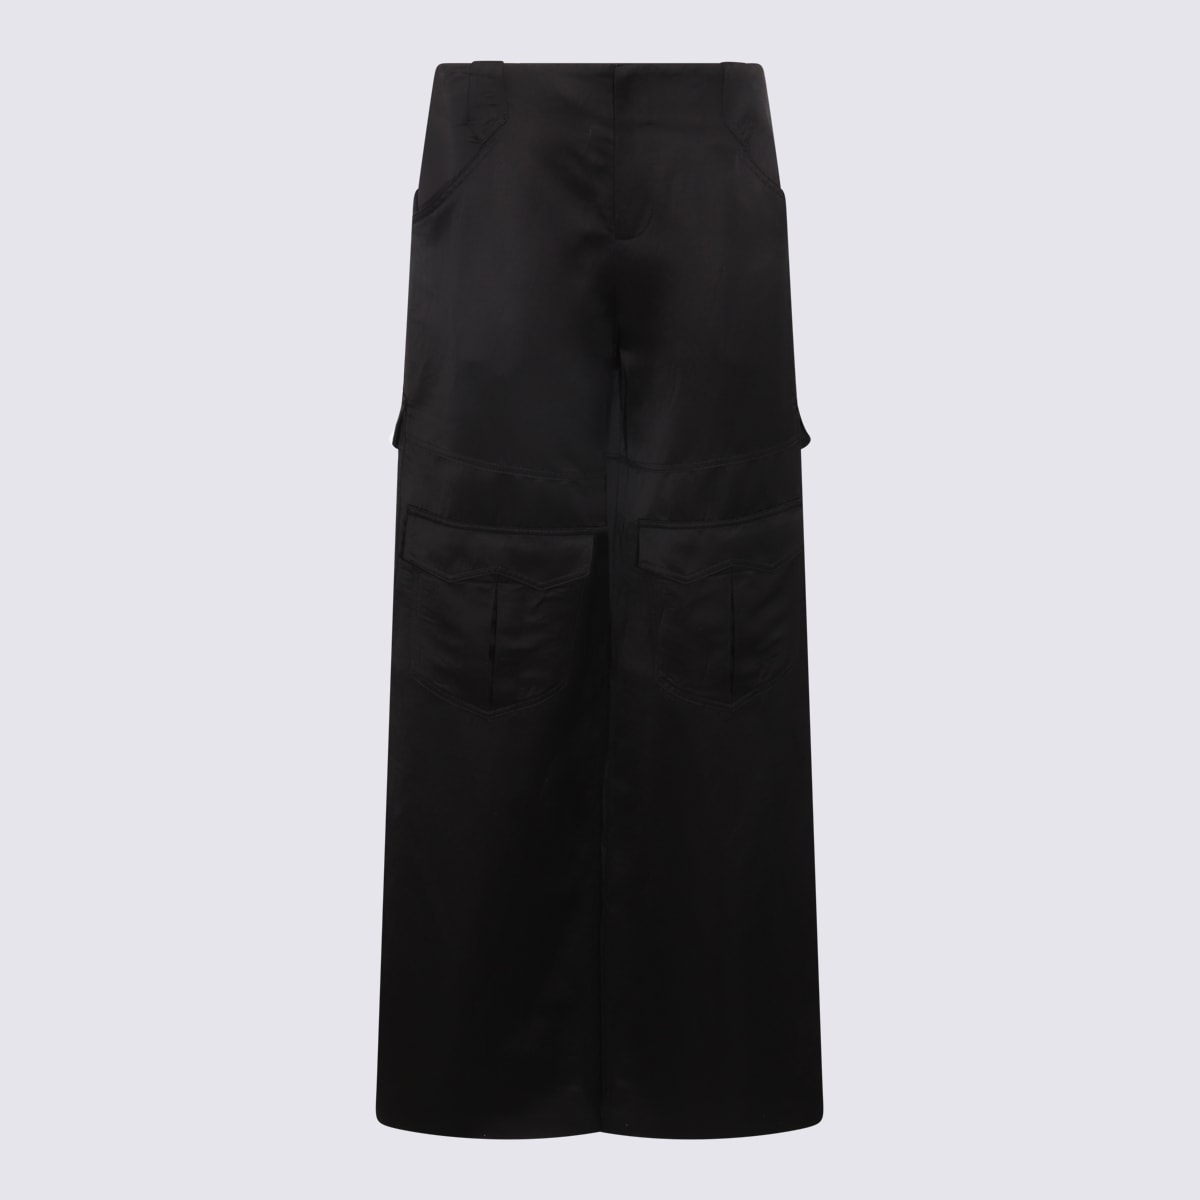 Shop Tom Ford Black Viscose And Linen Blend Long Skirt